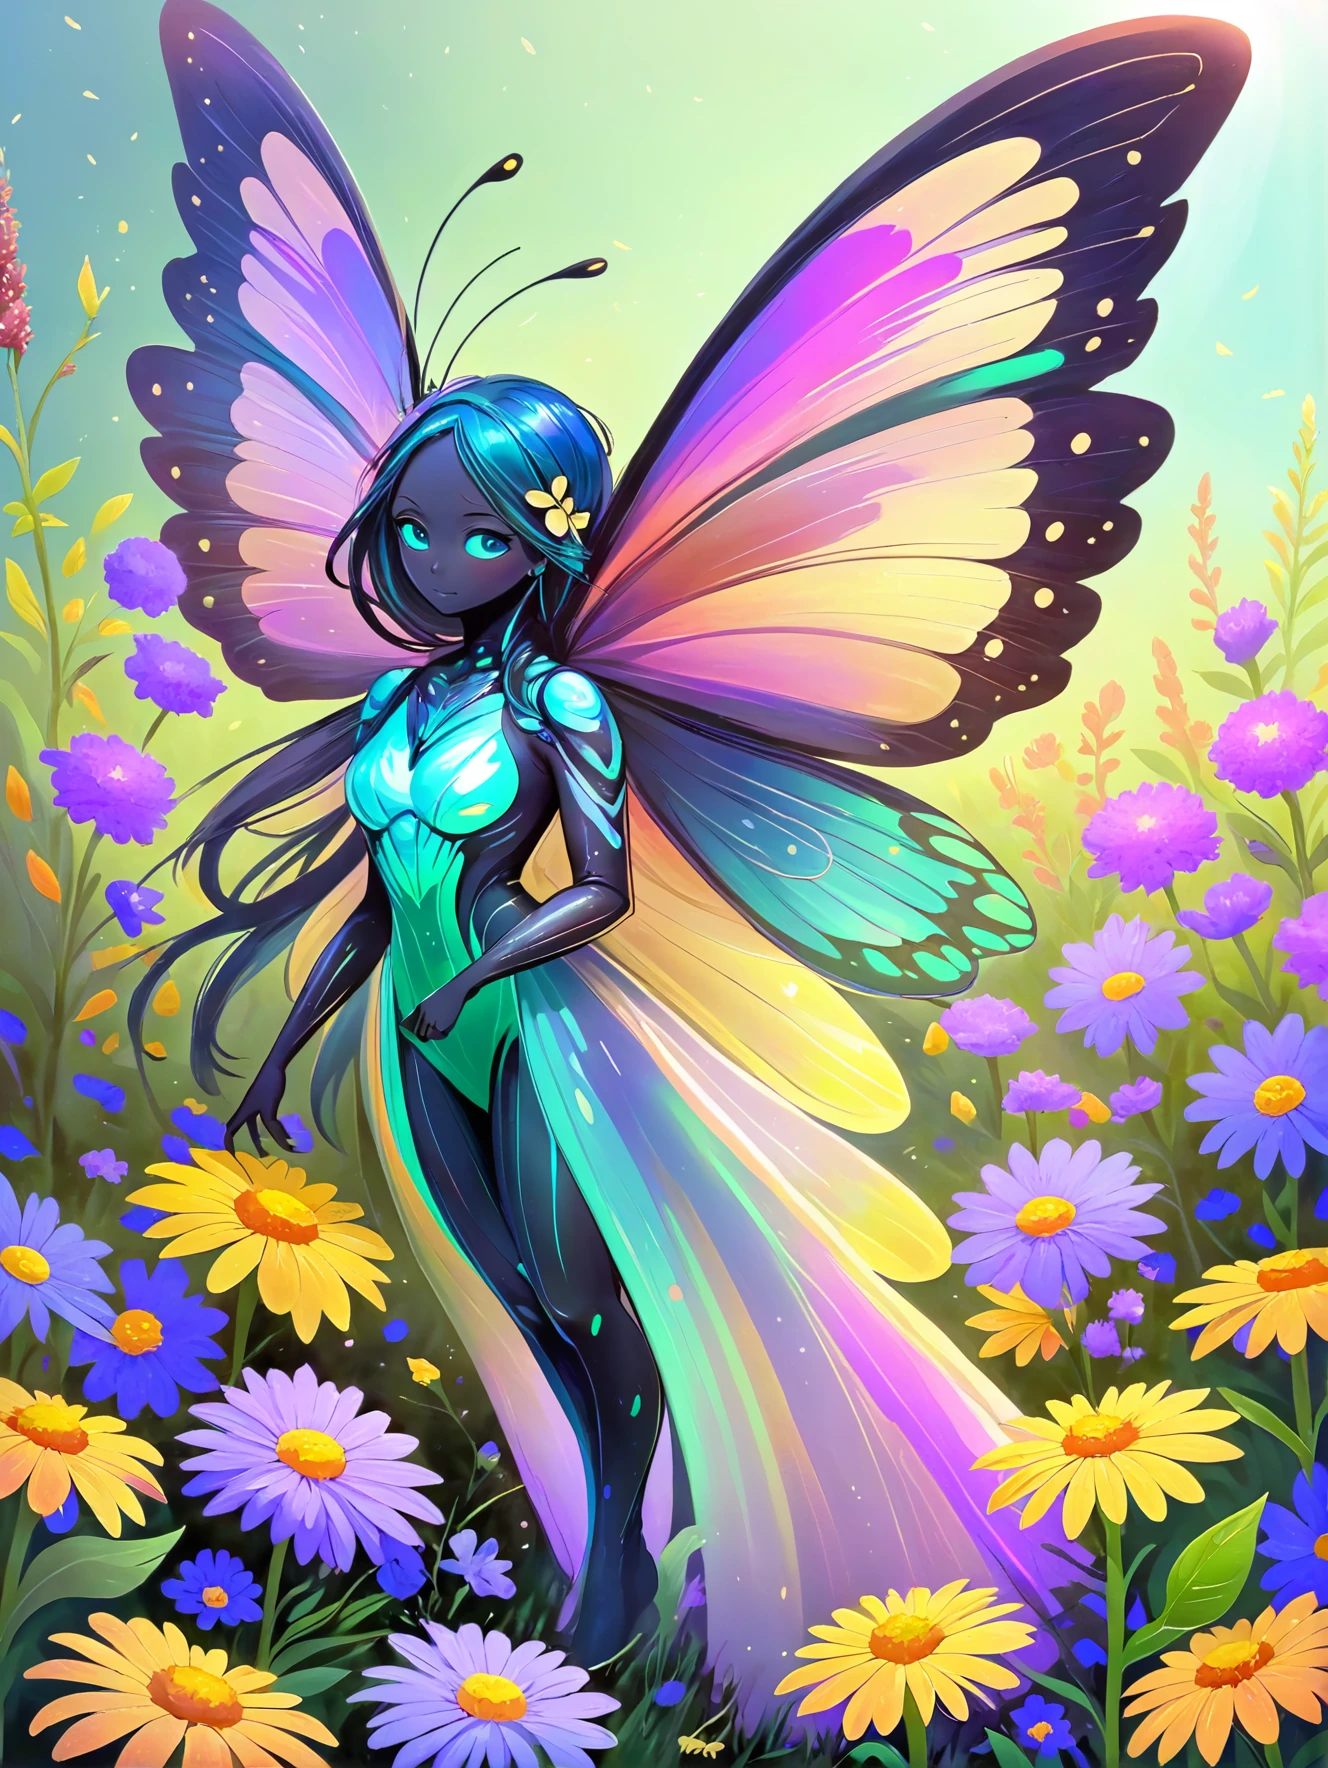 Un vibrante espíritu de mariposa, con alas iridiscentes, revoloteando entre un campo de flores silvestres.